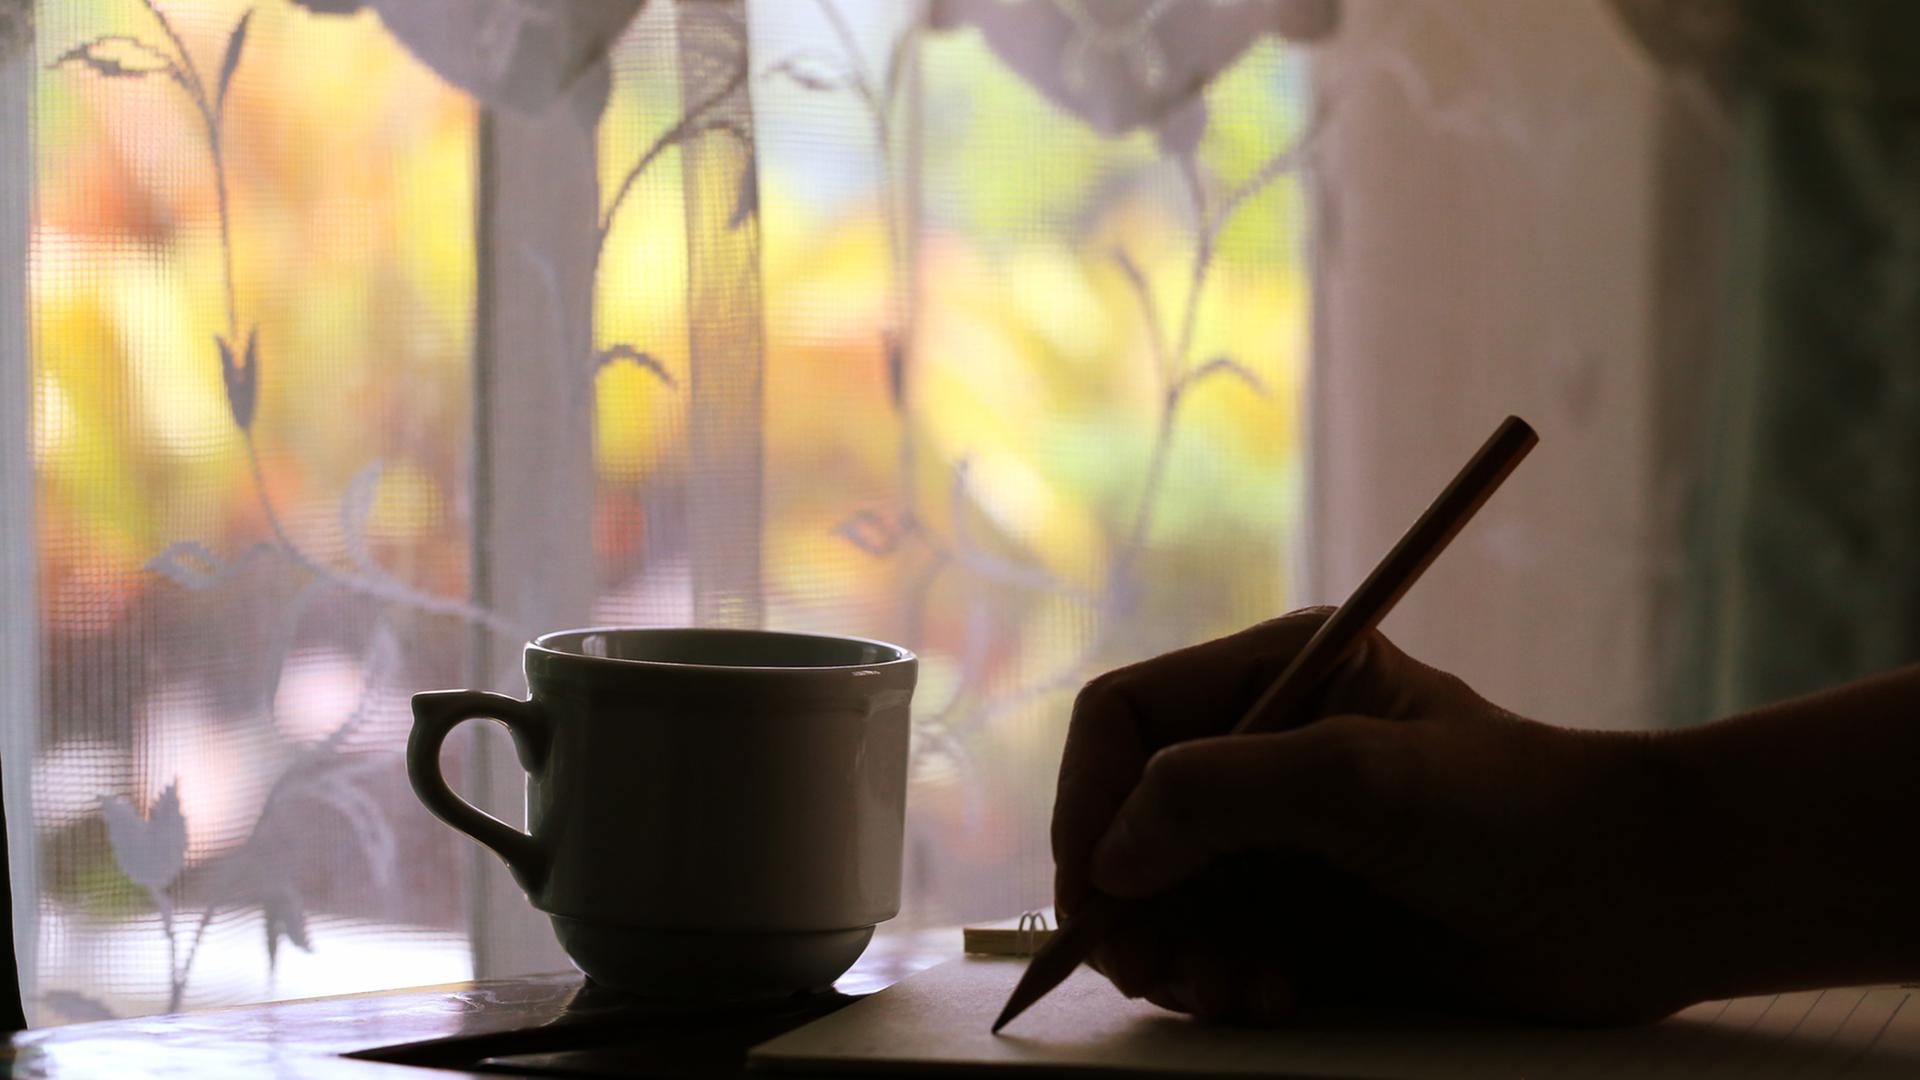 Vor eine, Fenster mit Blick nach draußen steht im Schatten ein Tasse; im Schatten sieht man außerdem eine Hand, die mit einem Stift auf ein Blatt Papier schreibt